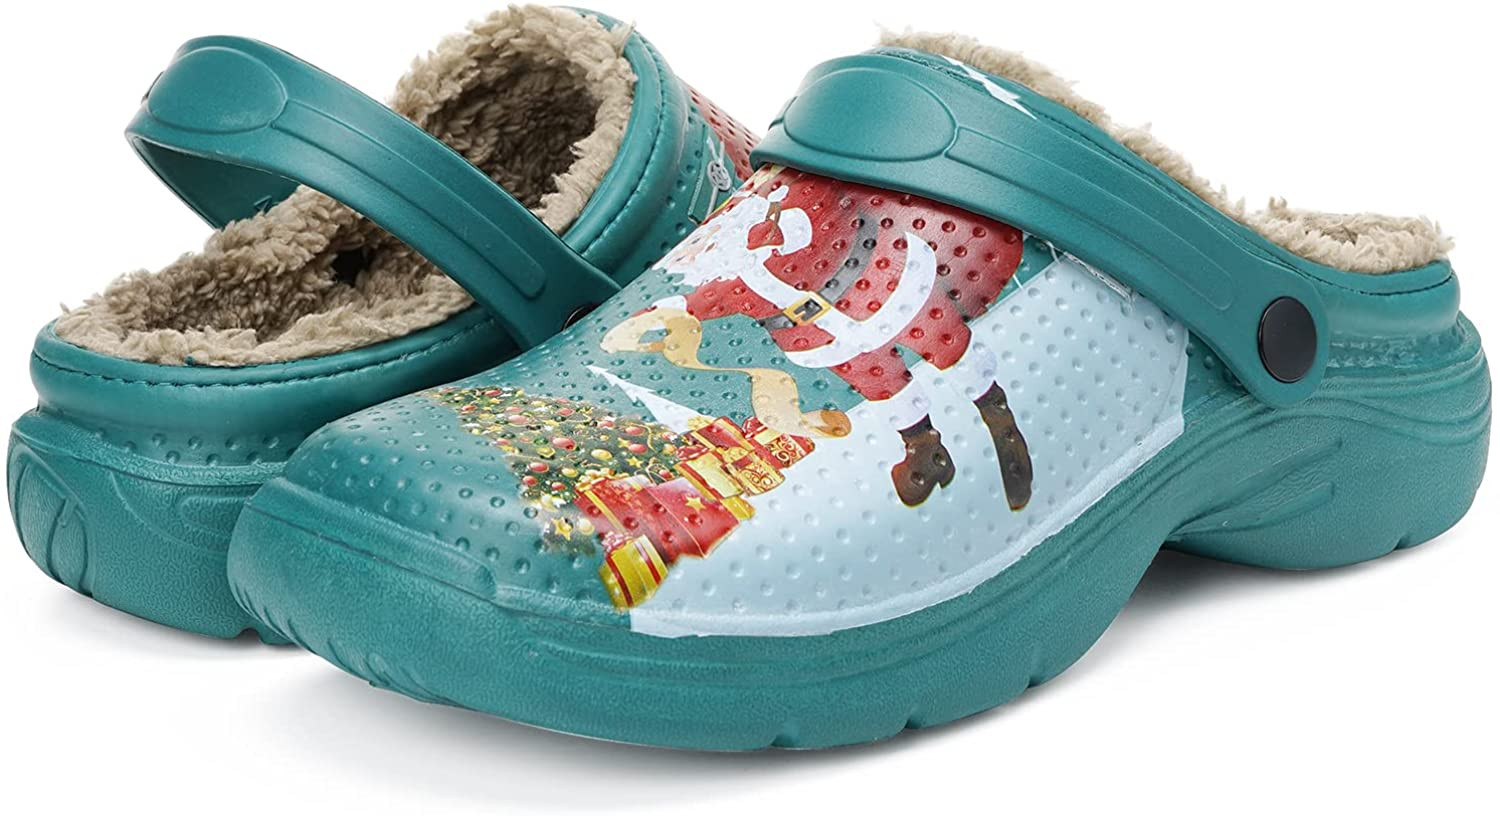 Invierno Zapatos de Casa con Forro de Piel Interior Al Aire Libre Impermeables Pantuflas Unisex Zapatillas de Estar por Casa Mujer Hombre 